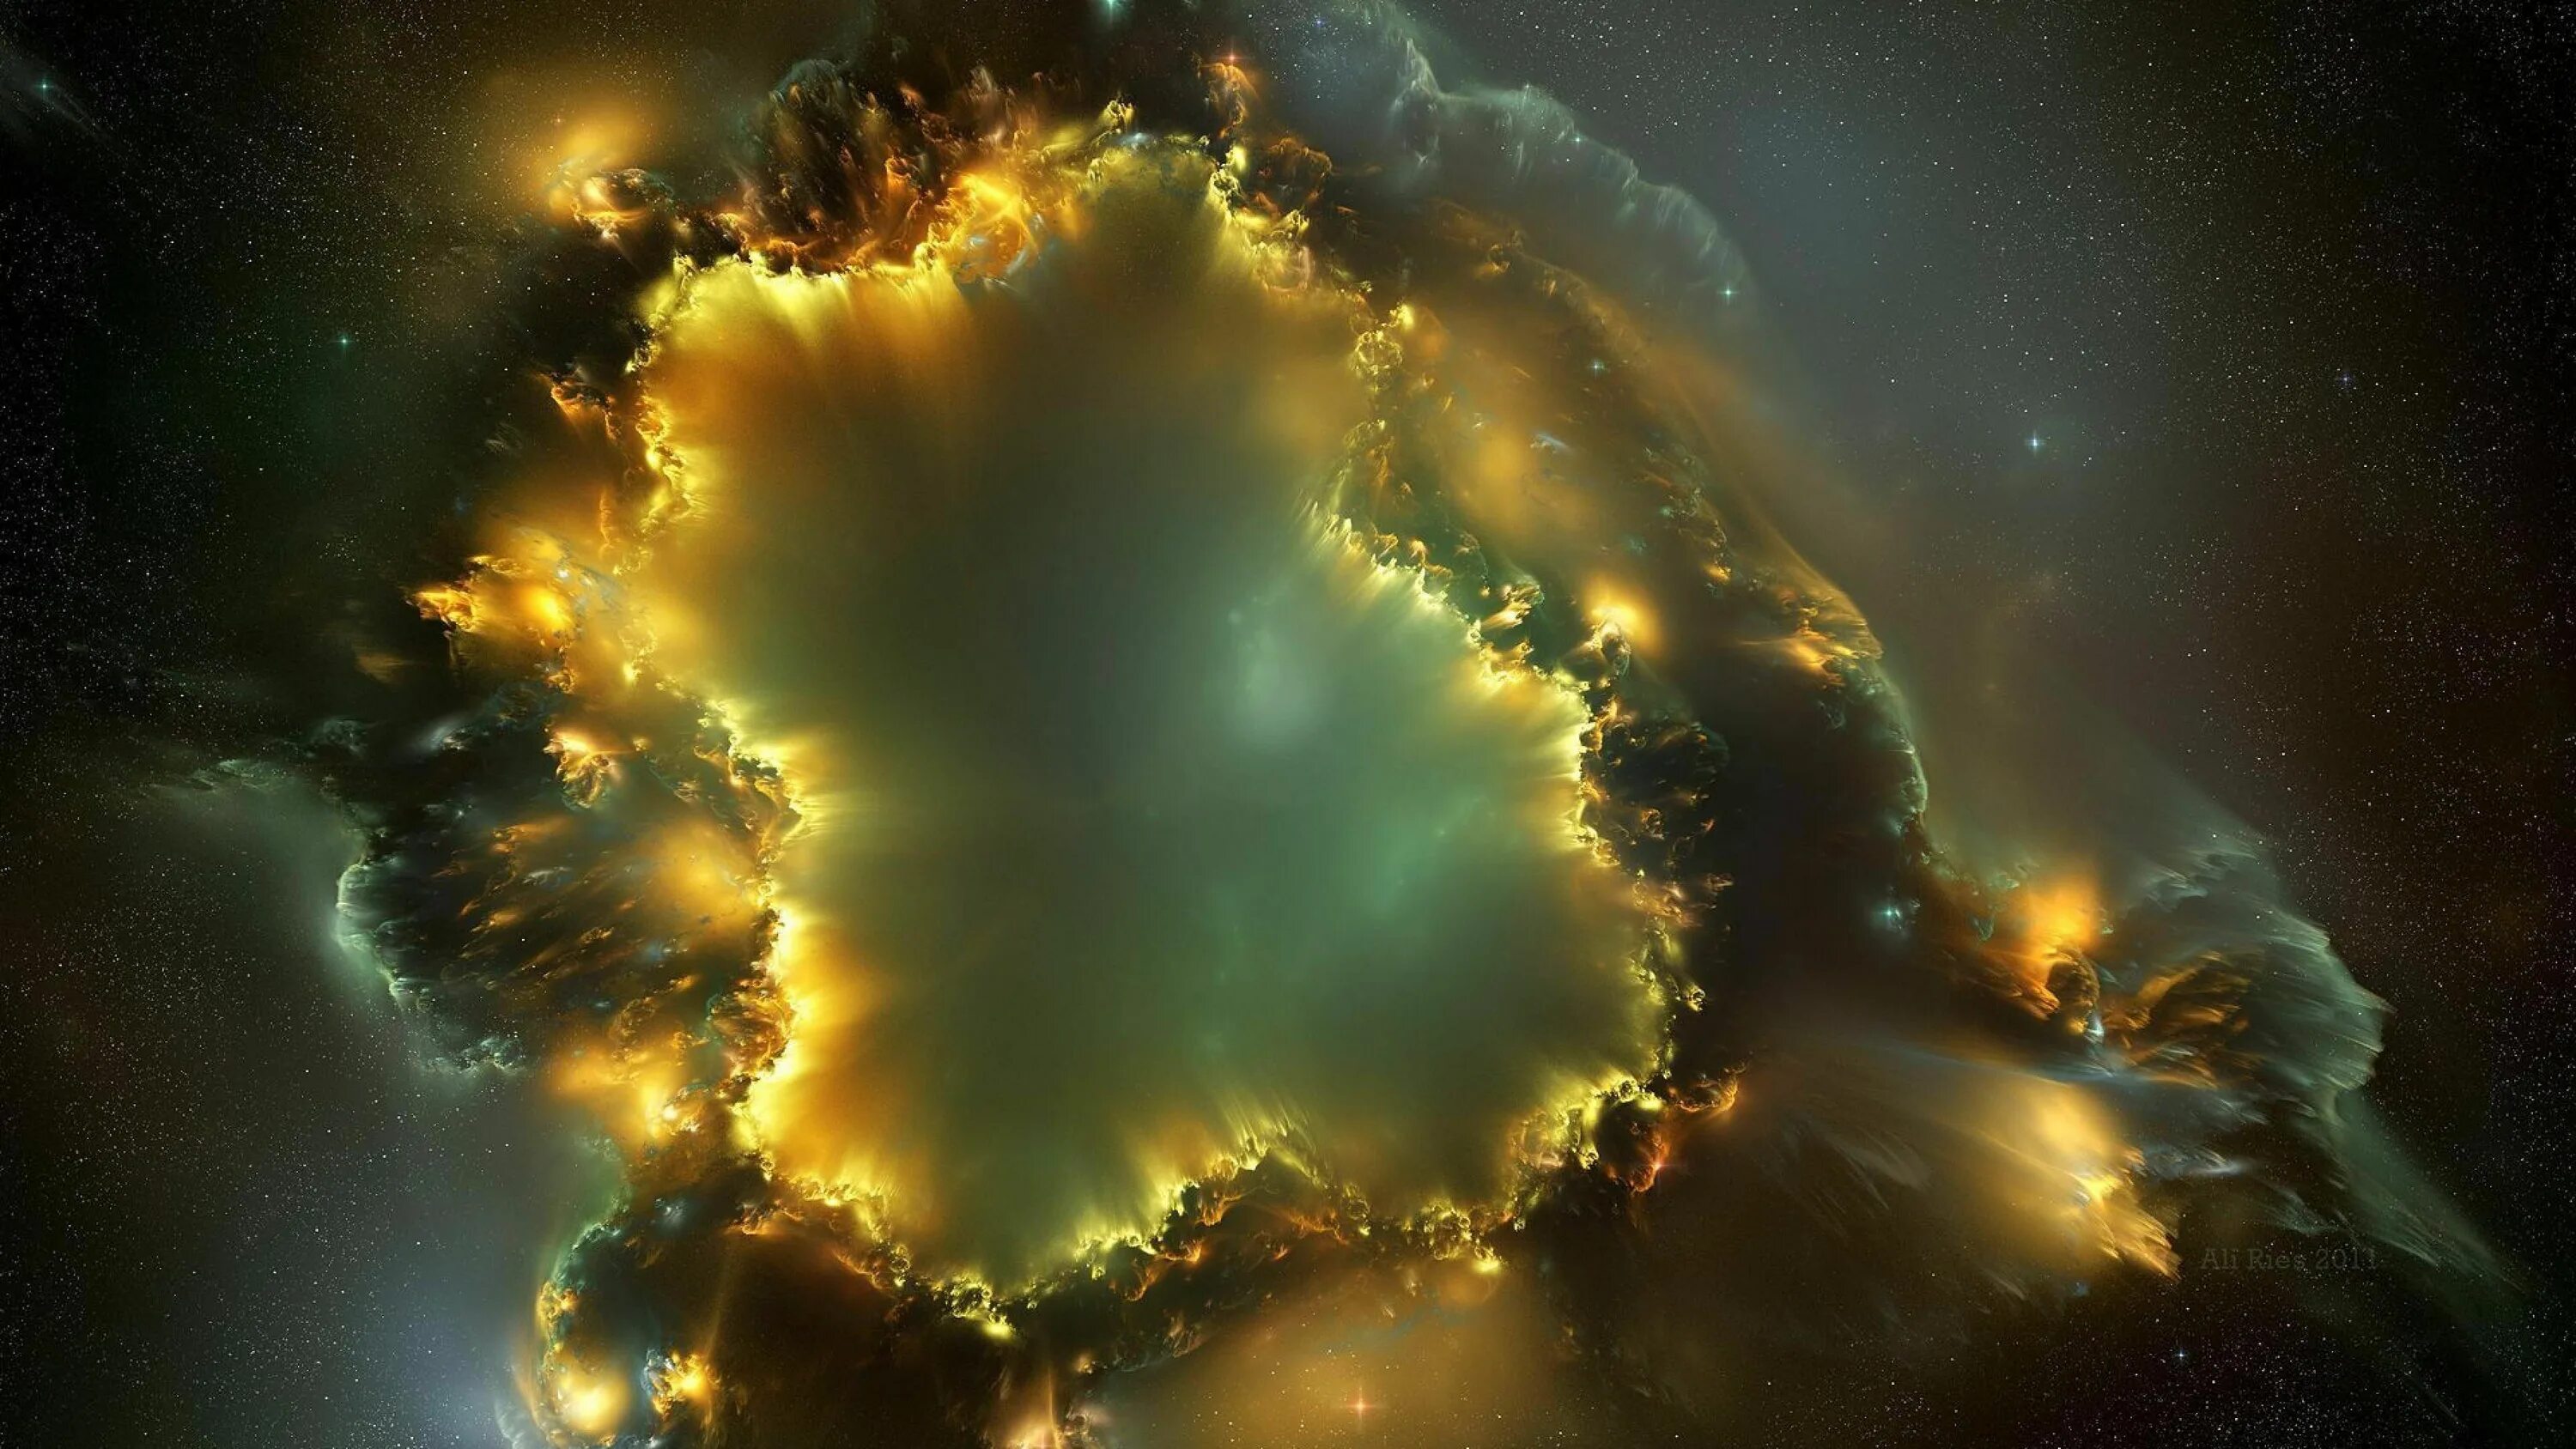 Фон рабочего стола 1920 1080. Космос взрыв сверхновой звезды. Галактика Небула. Космическая туманность. Солнечная туманность.